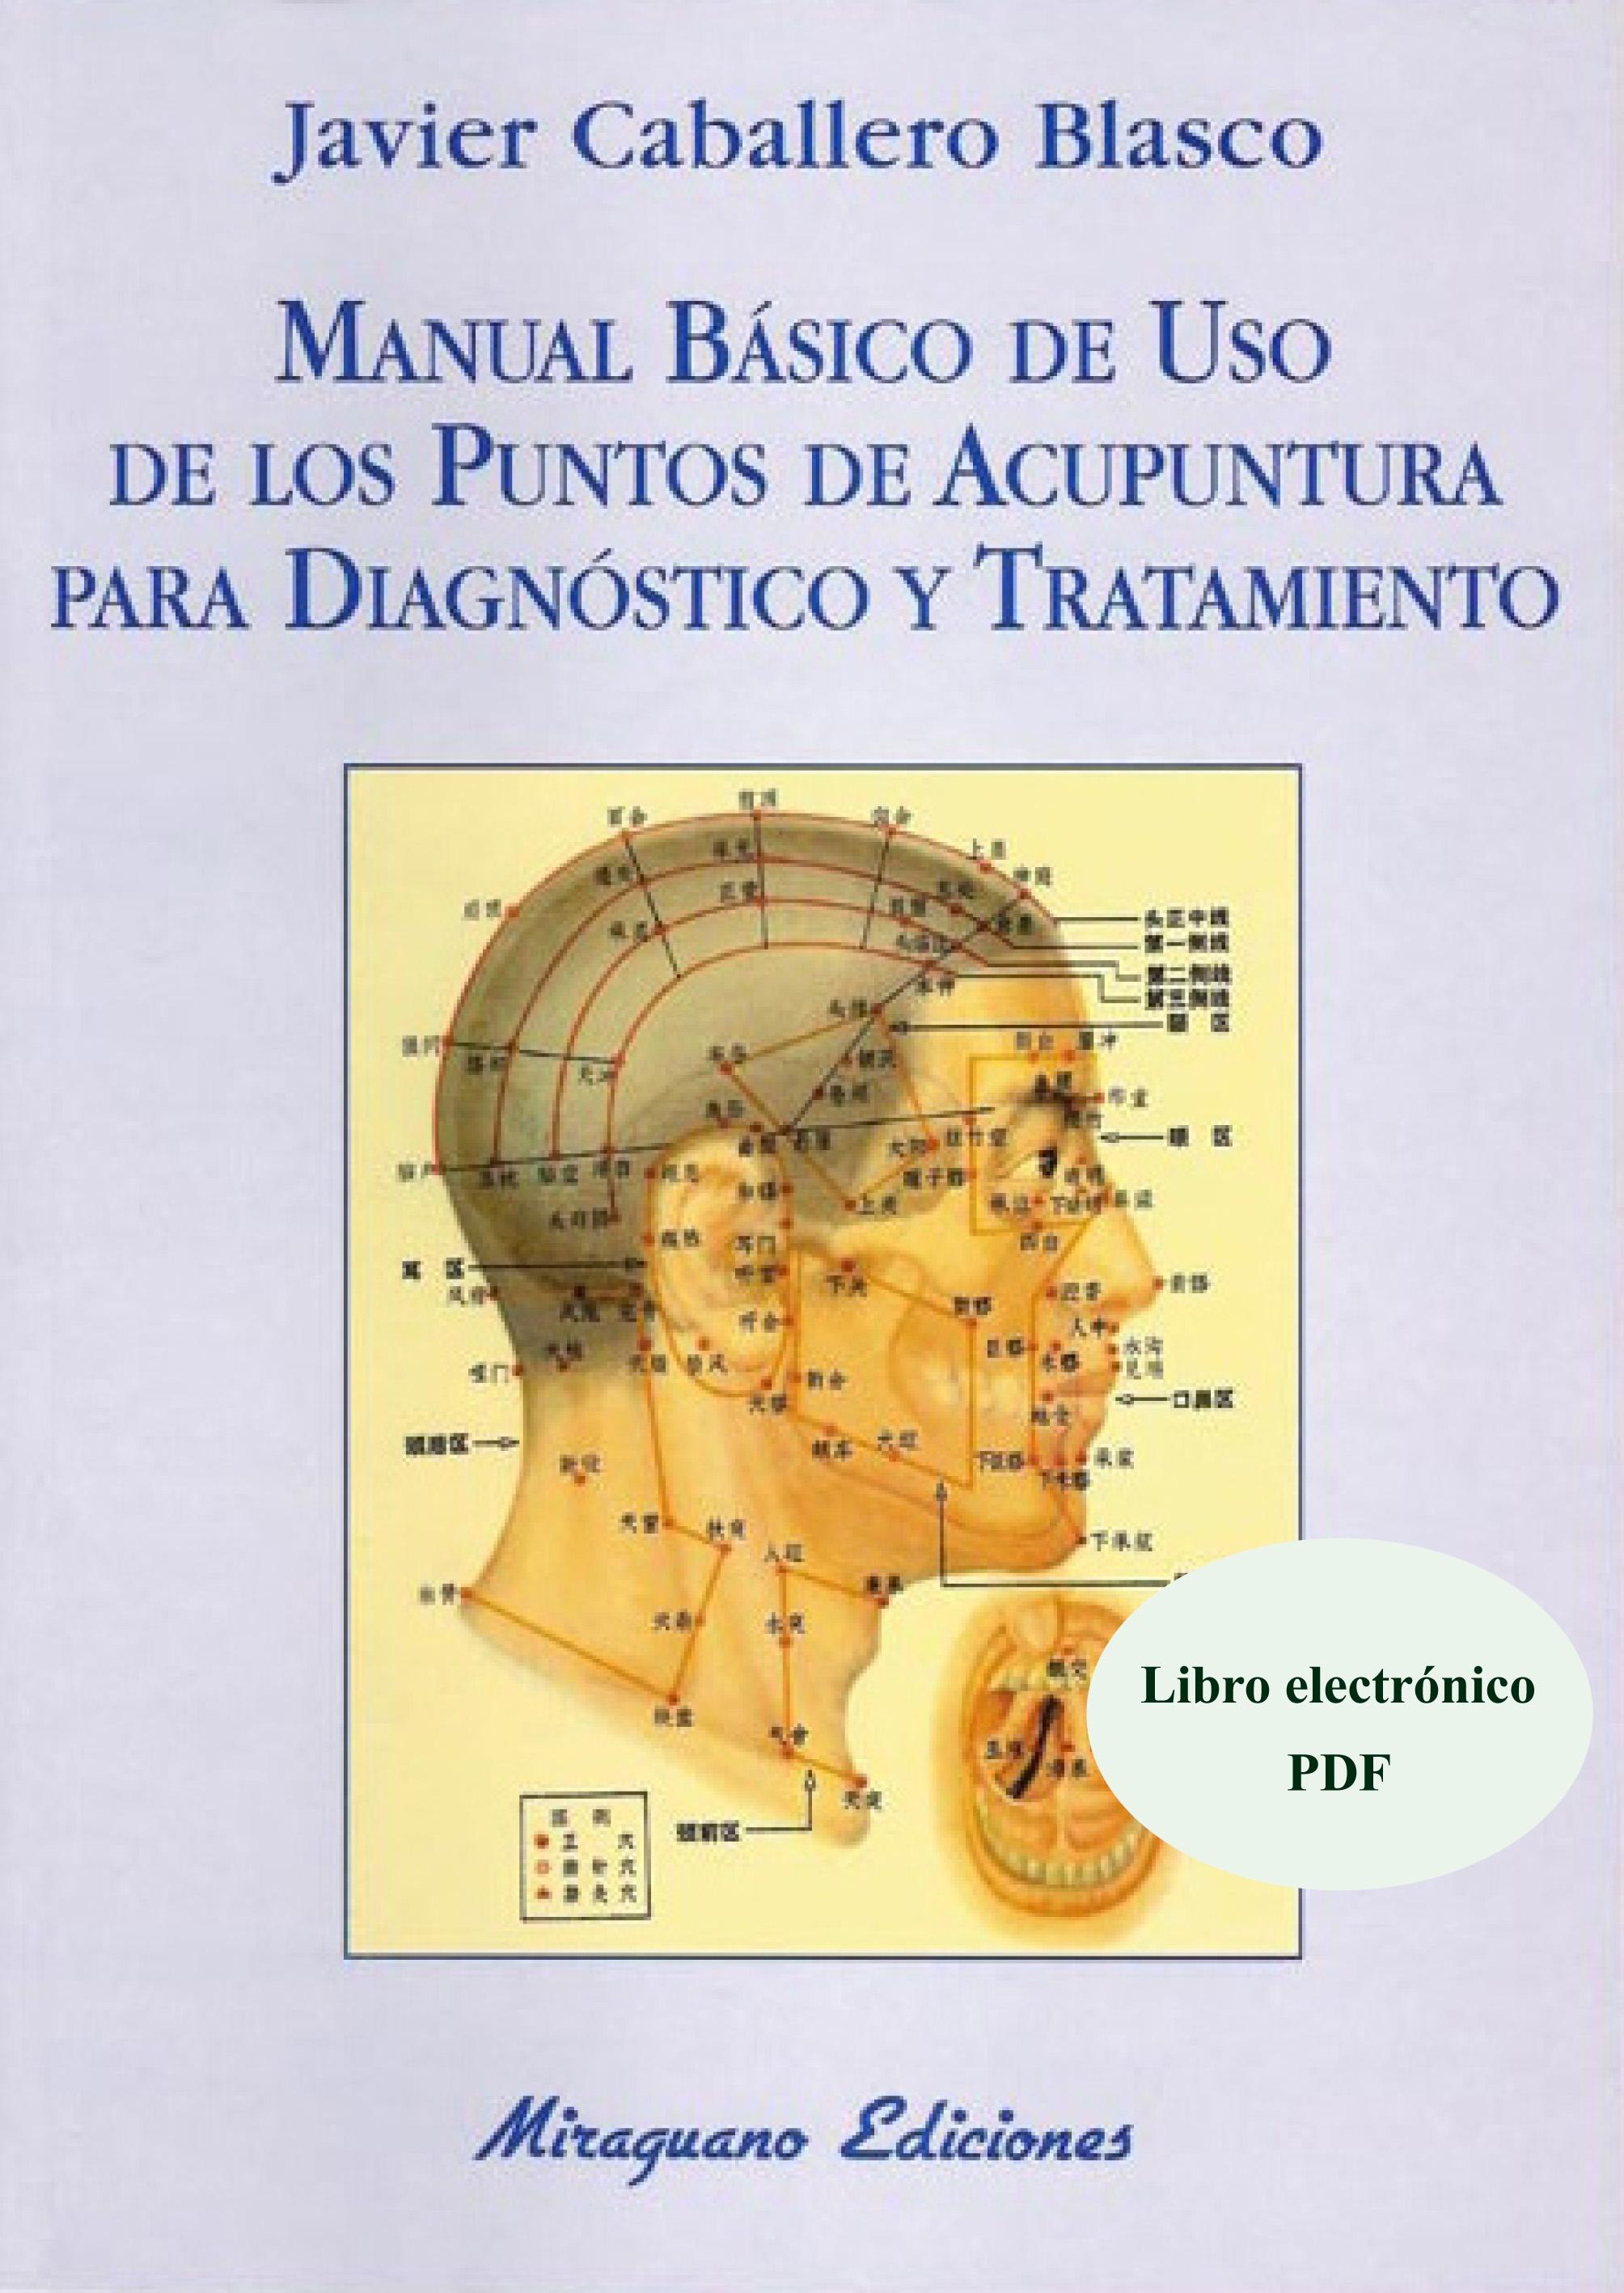 Manual Básico de Uso de los Puntos de Acupuntura para Diagnóstico y Tratamiento "Libro Electrónico (PDF)"